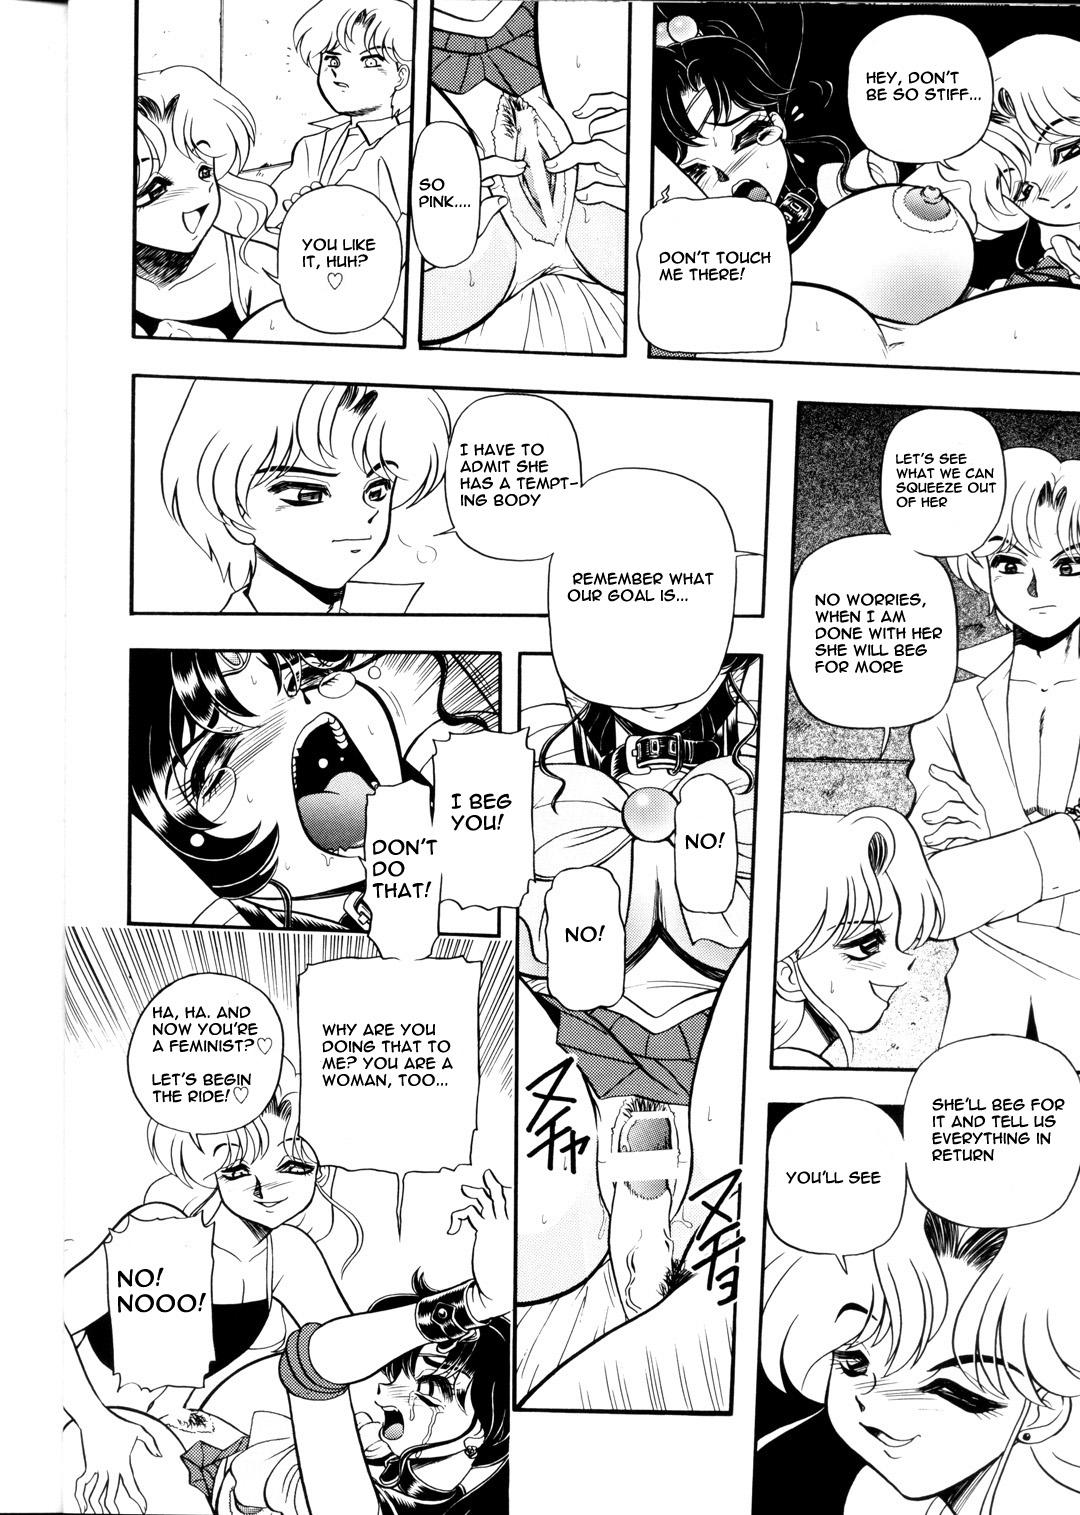 Blow Job Contest S·M↔R - Sailor moon Milf Sex - Page 12